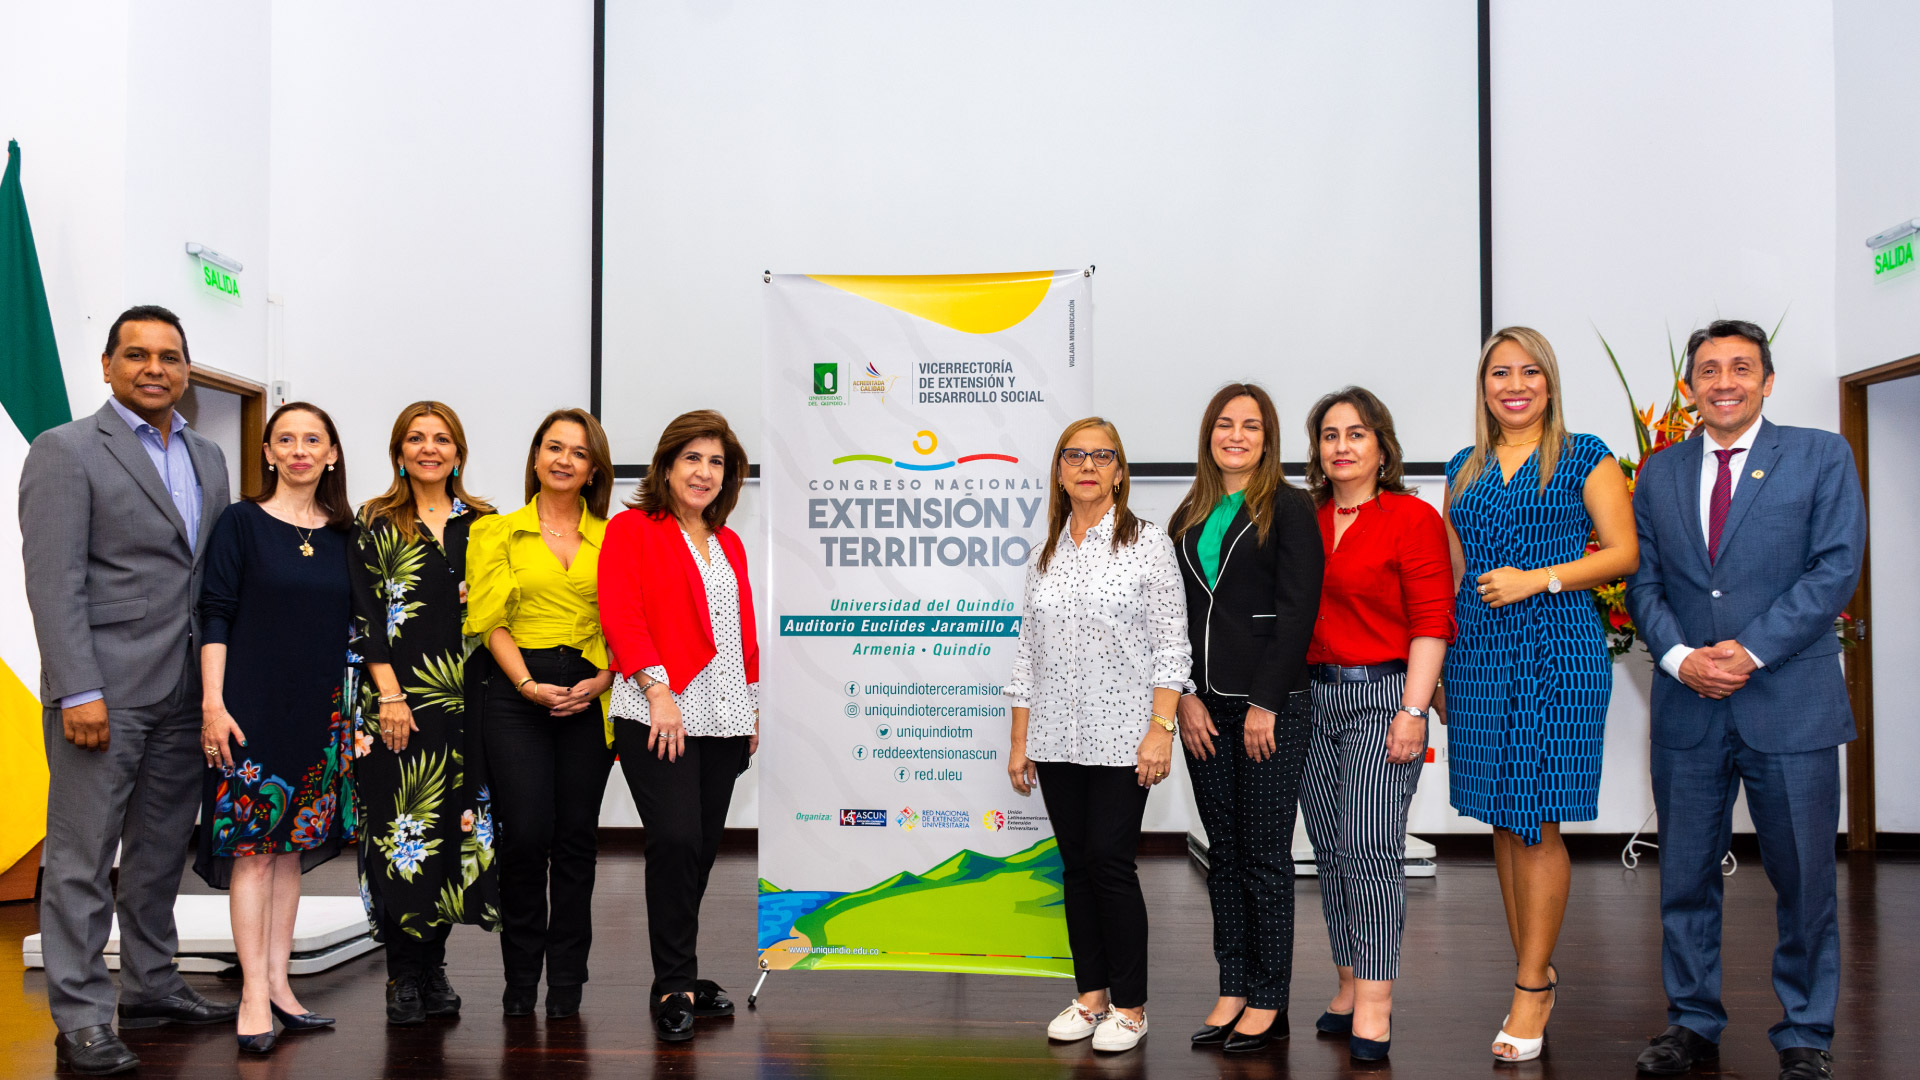 Extensión y Territorio, temas de alto impacto expuestos en Congreso Nacional celebrado en Uniquindío